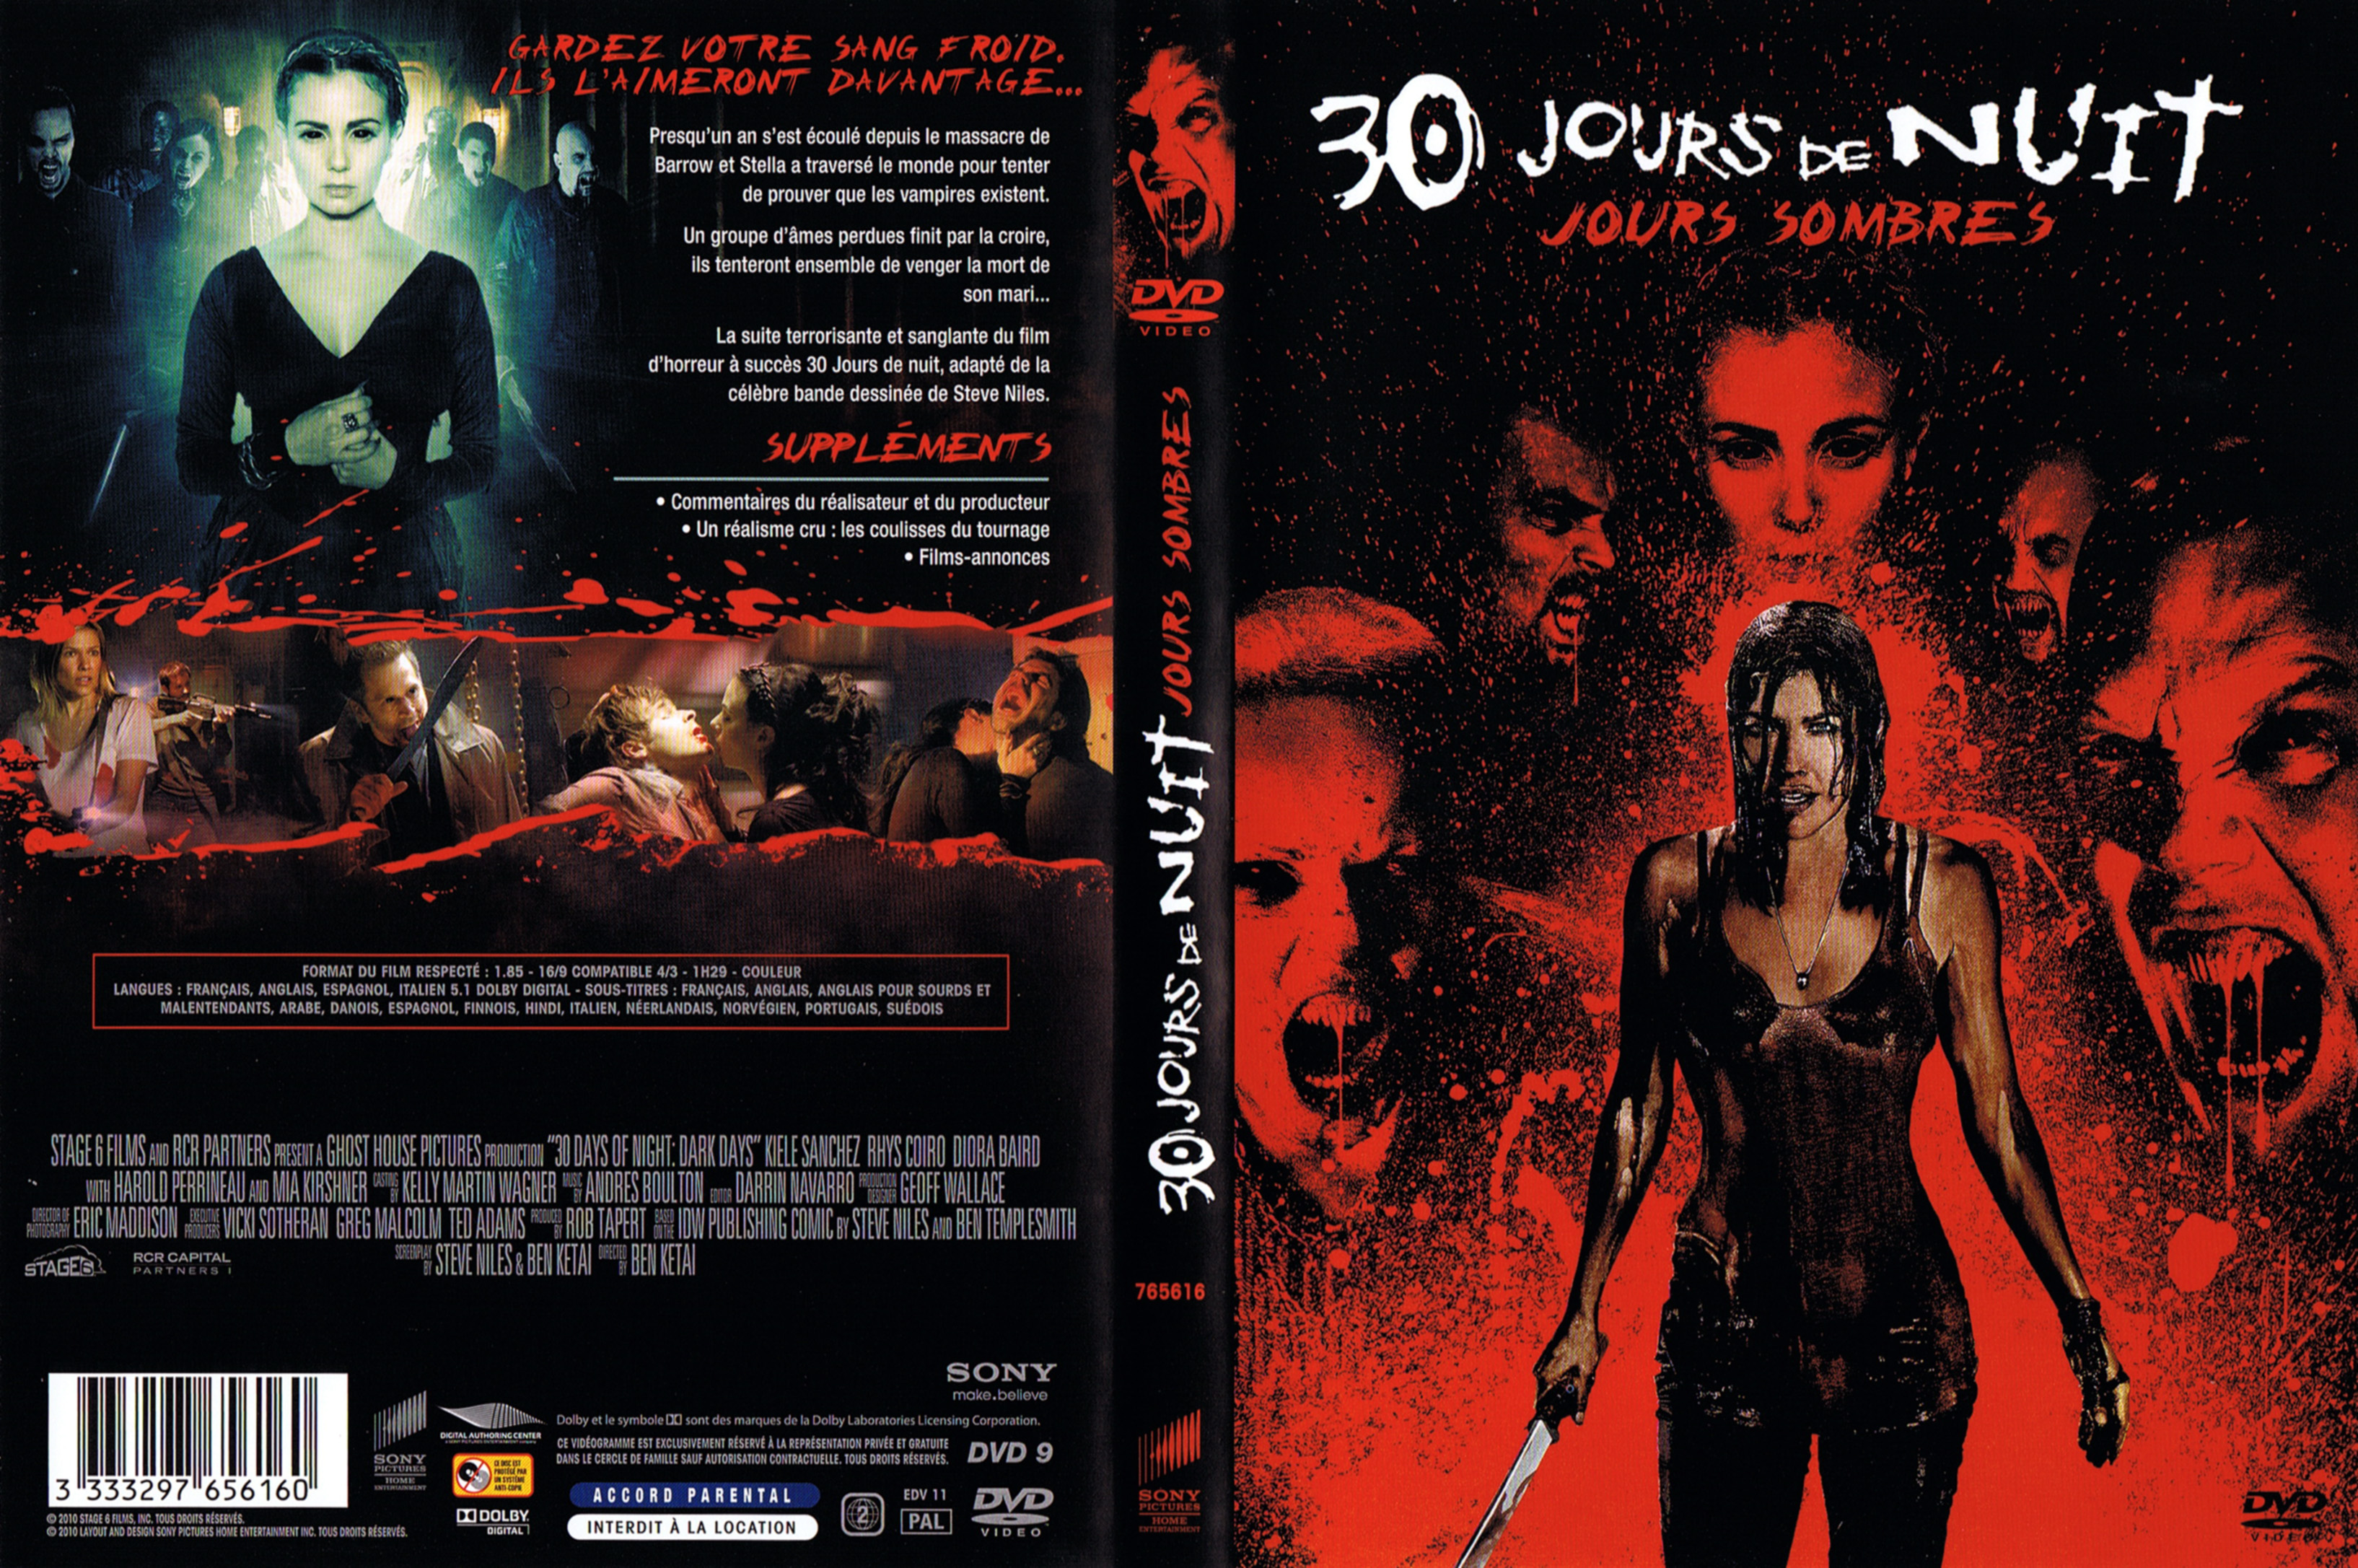 Jaquette DVD 30 jours de nuit - Jours sombres